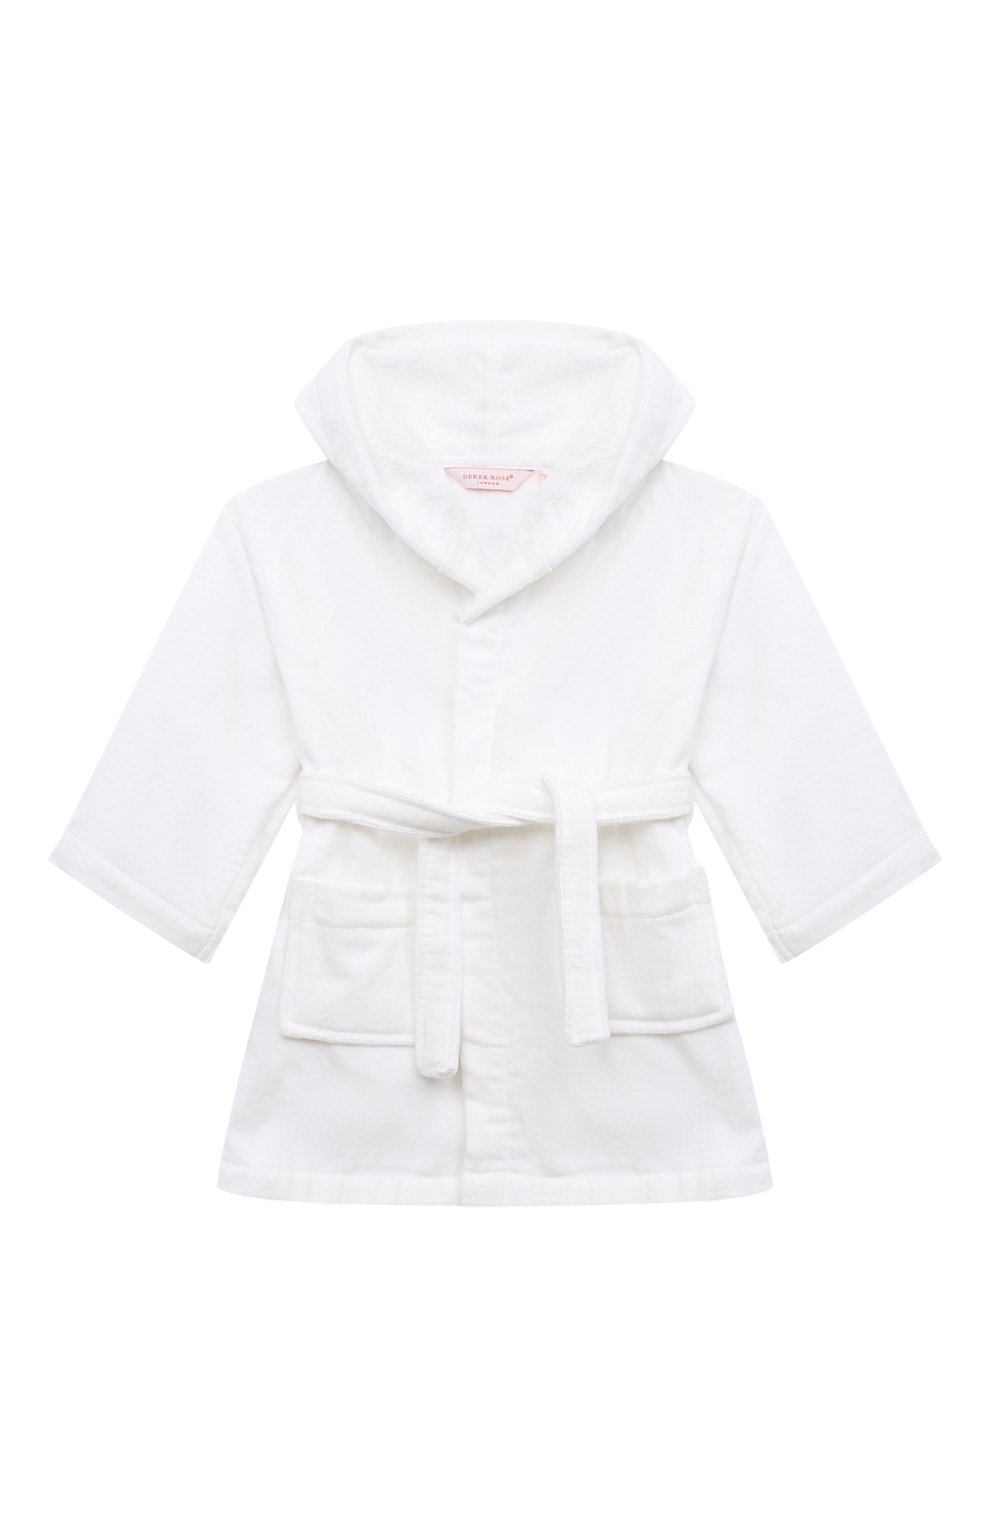 Хлопковый халат DEREK ROSE детский белого цвета — купить в  интернет-магазине ЦУМ, арт. 7262-TRIT010